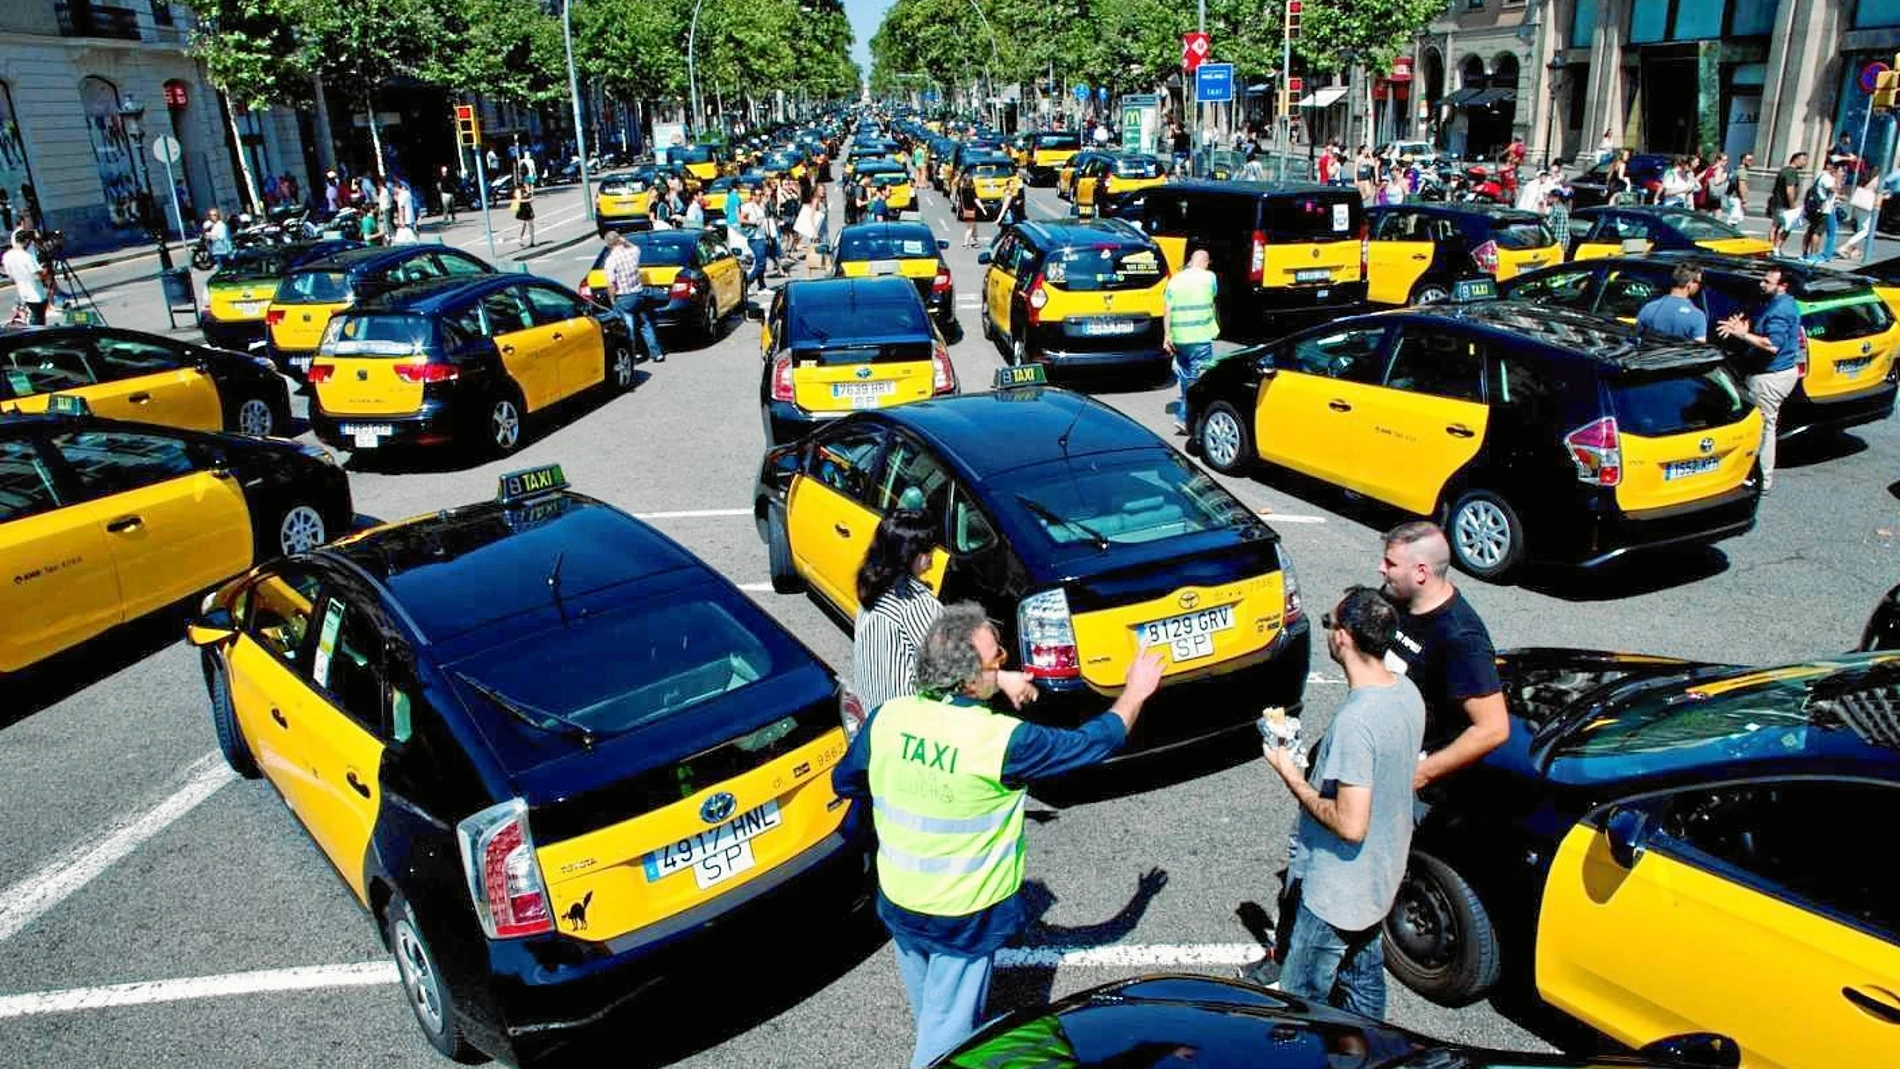 Imagen de una protesta de los taxis cortando la circulación en Barcelona. Foto: Efe